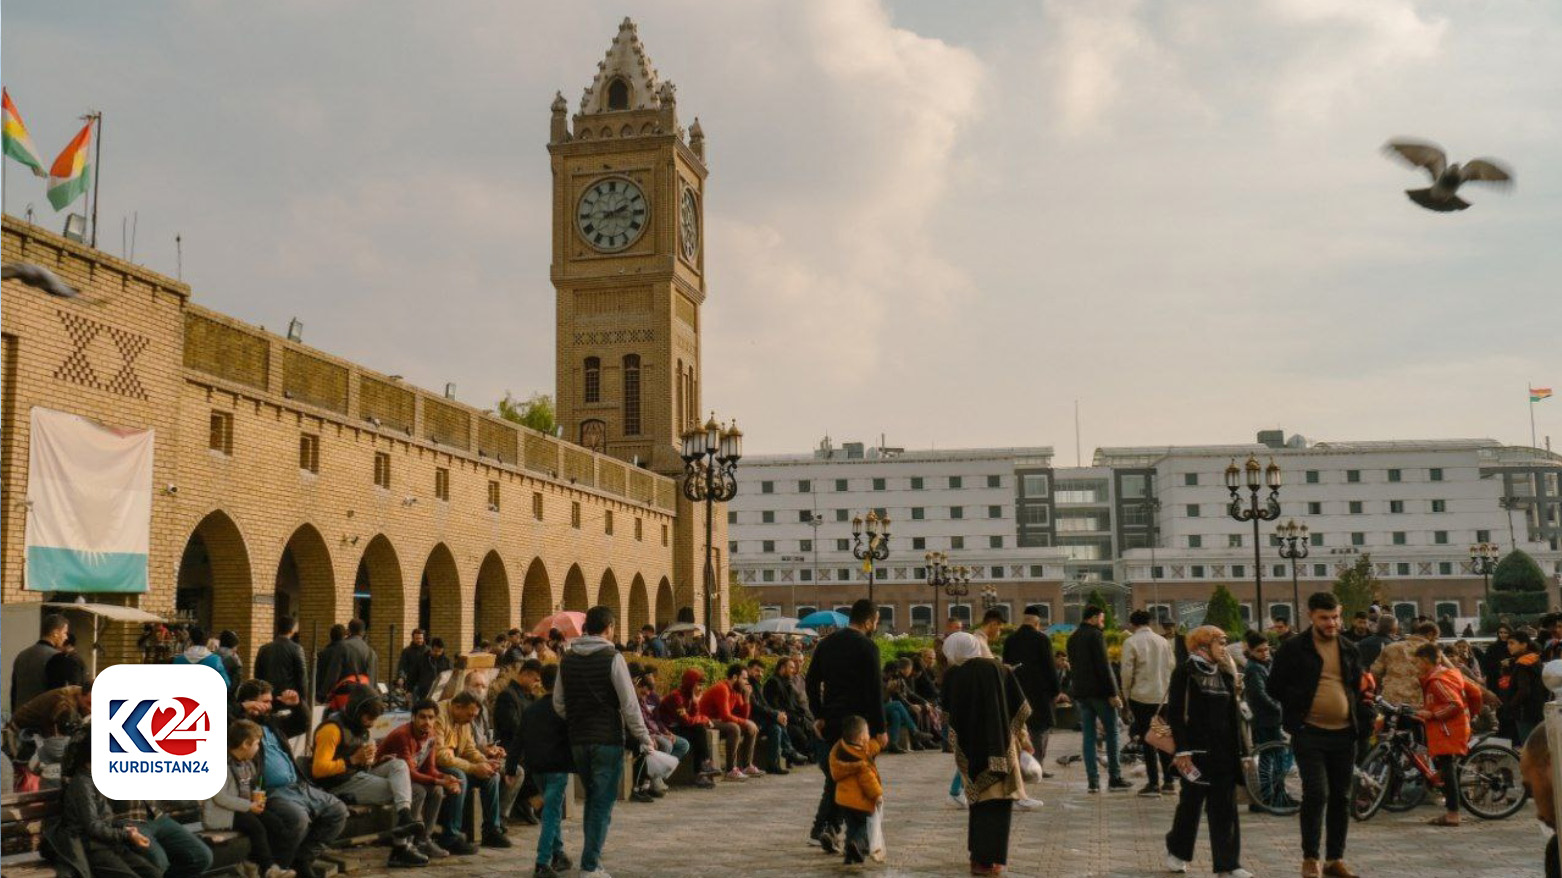 مشهدٌ لسوق أربيل بالقرب من القلعة / أرشيف